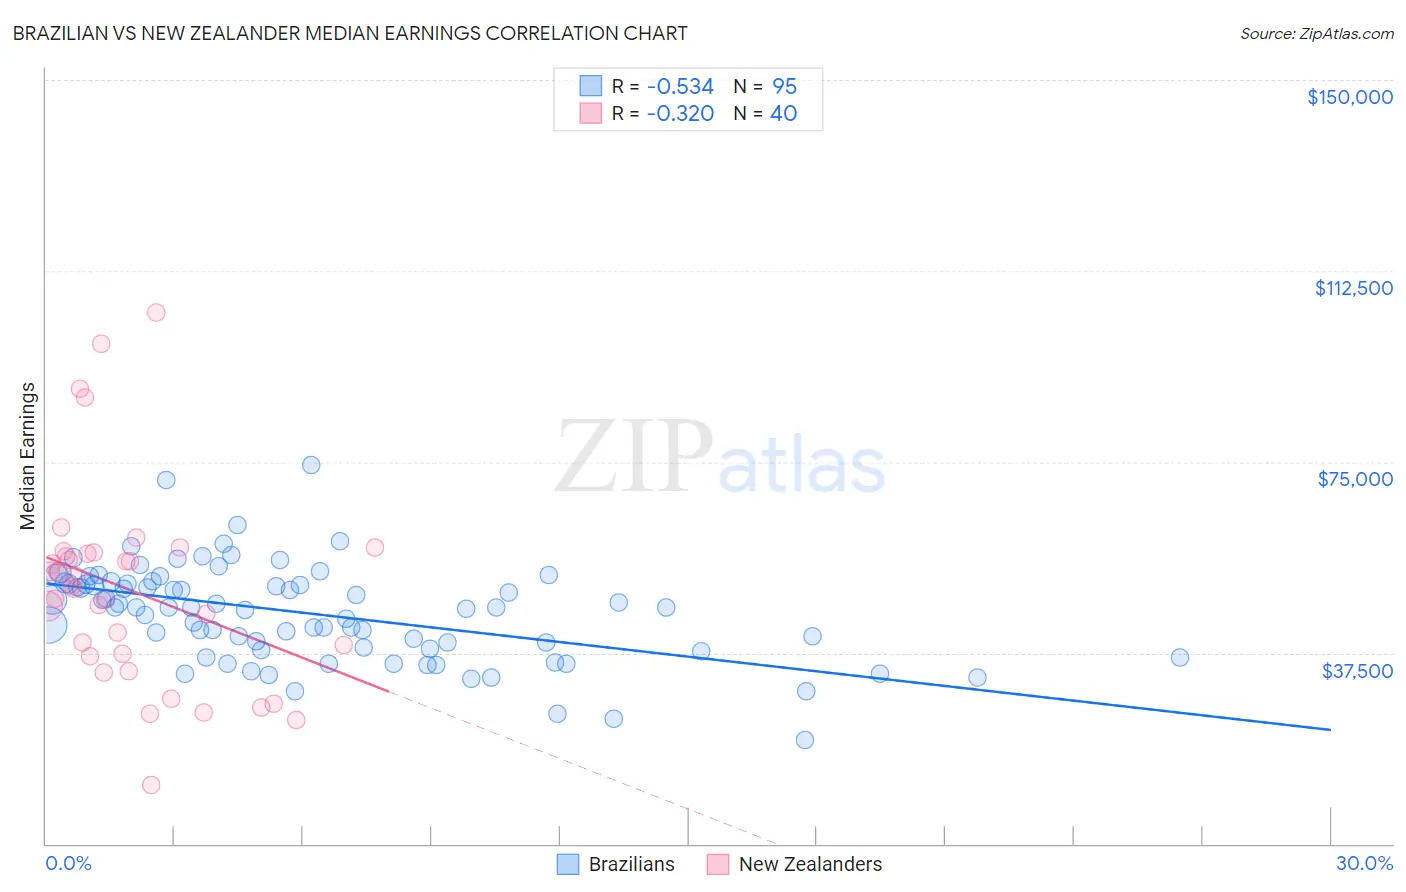 Brazilian vs New Zealander Median Earnings